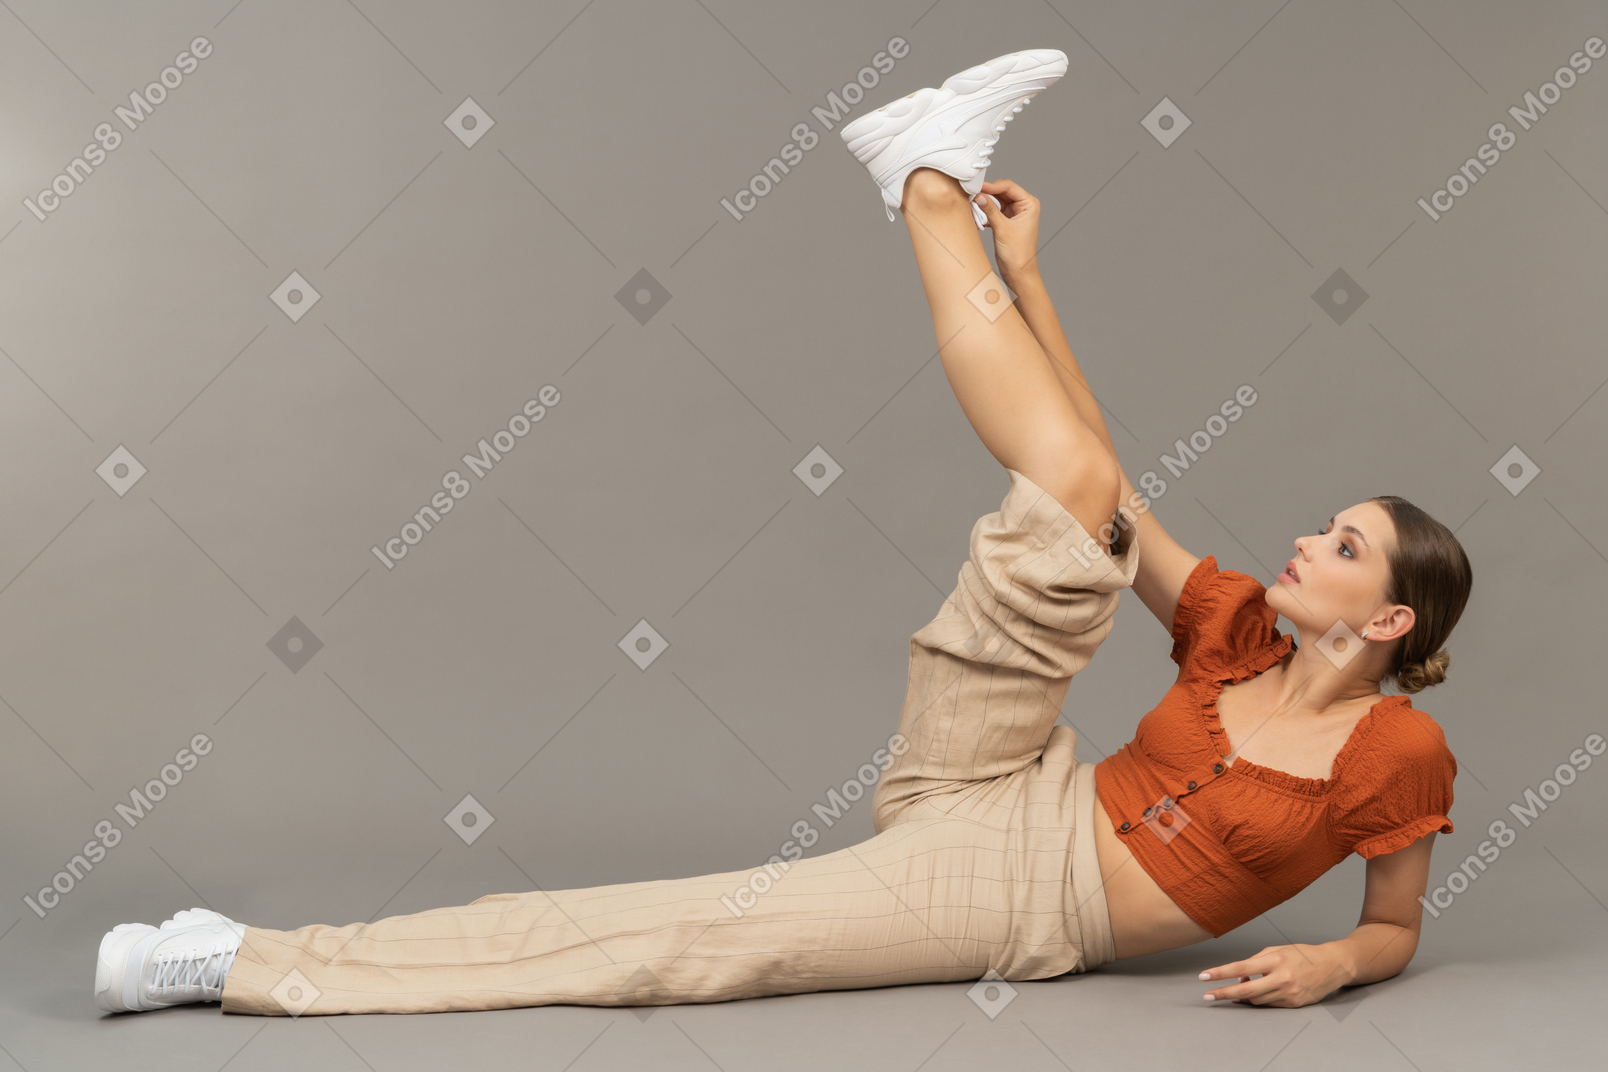 La giovane donna si sdraia e alza la gamba